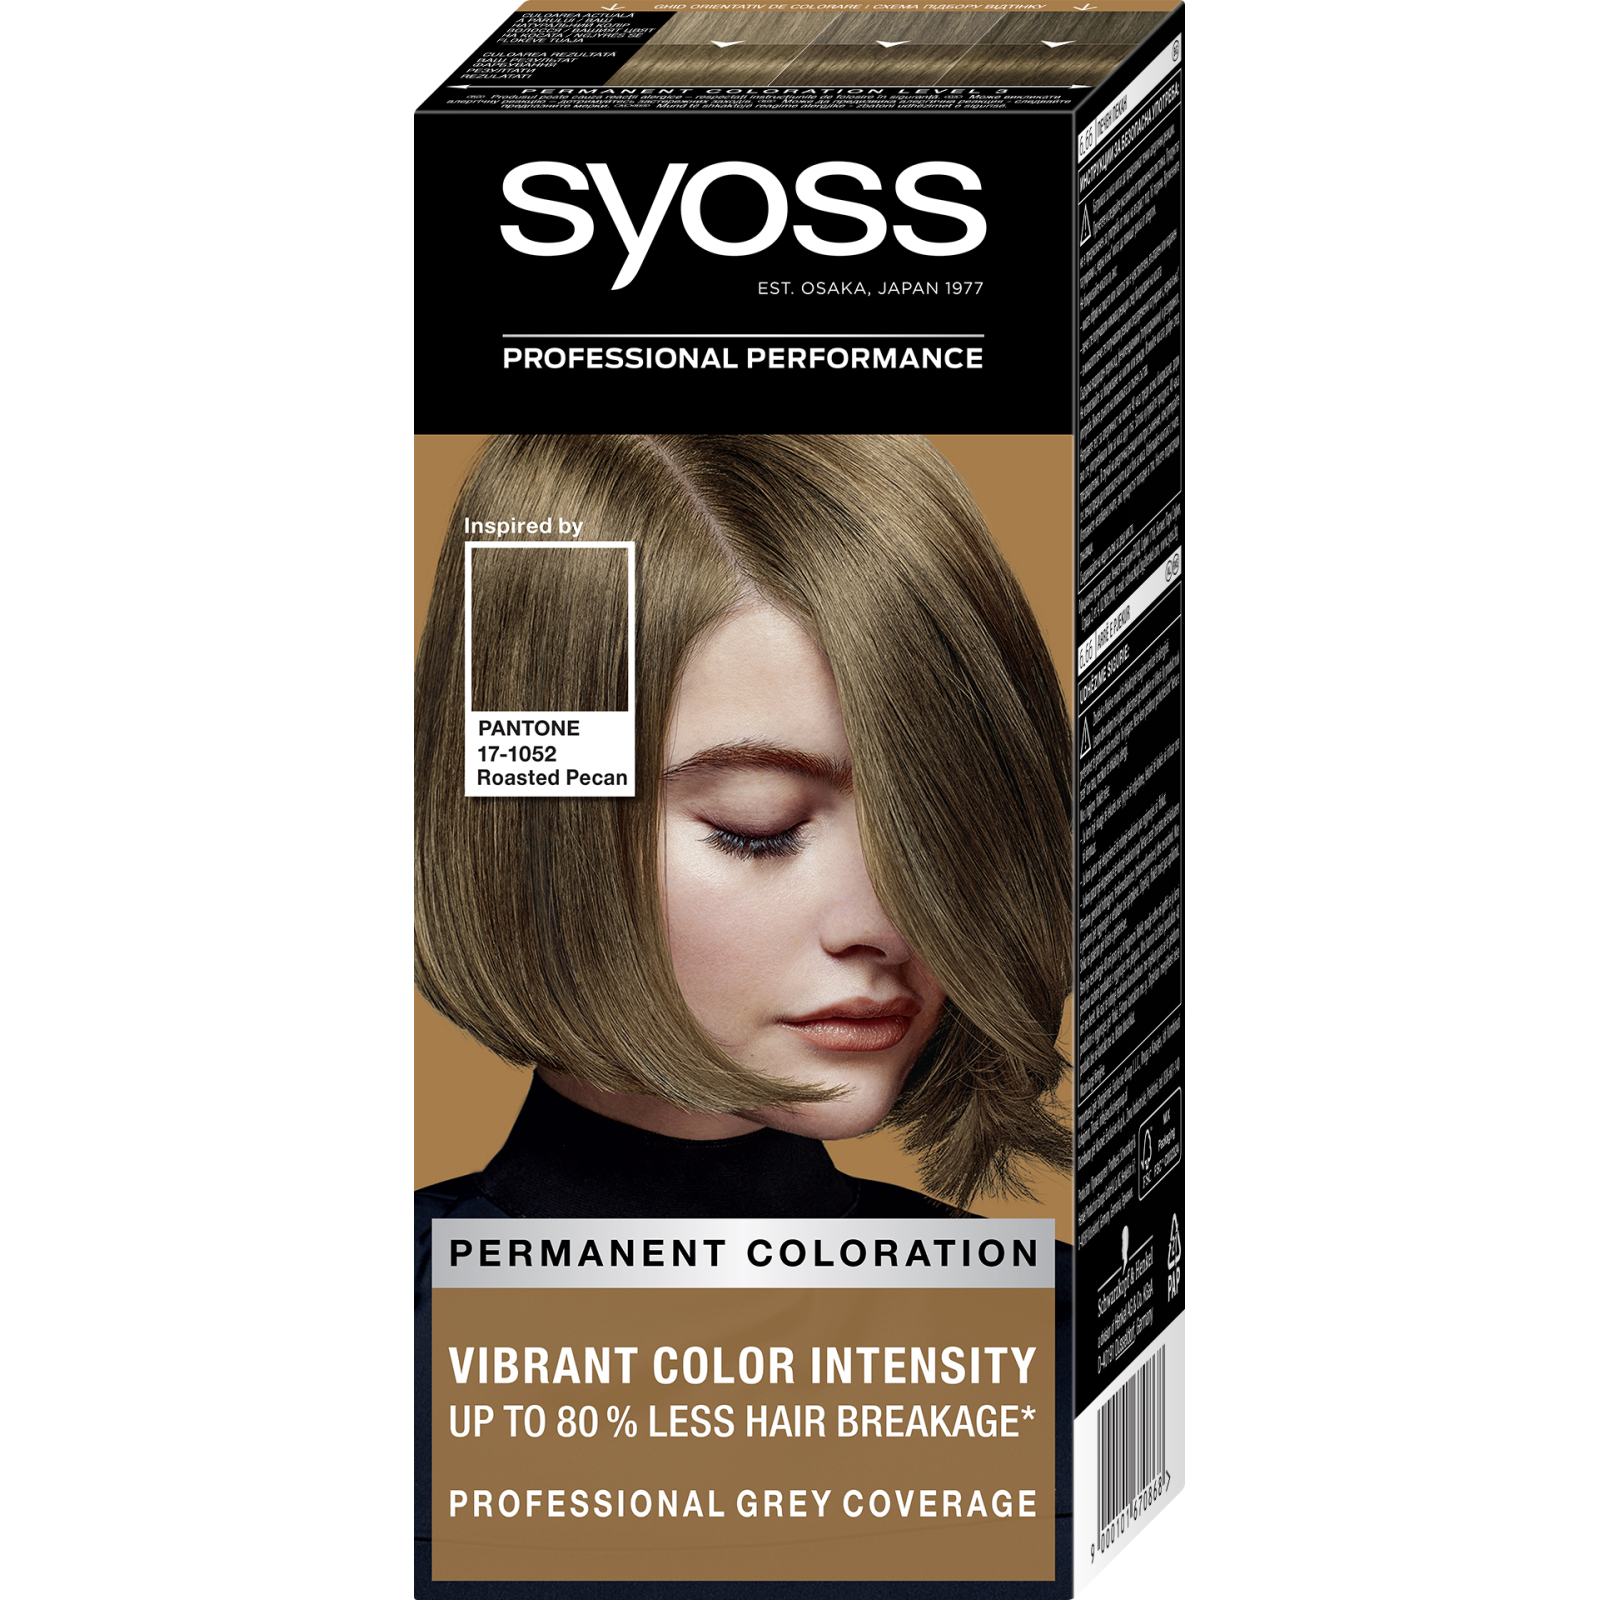 Фарба для волосся Syoss 10-13 Арктичний блонд 115 мл (9000101628630)